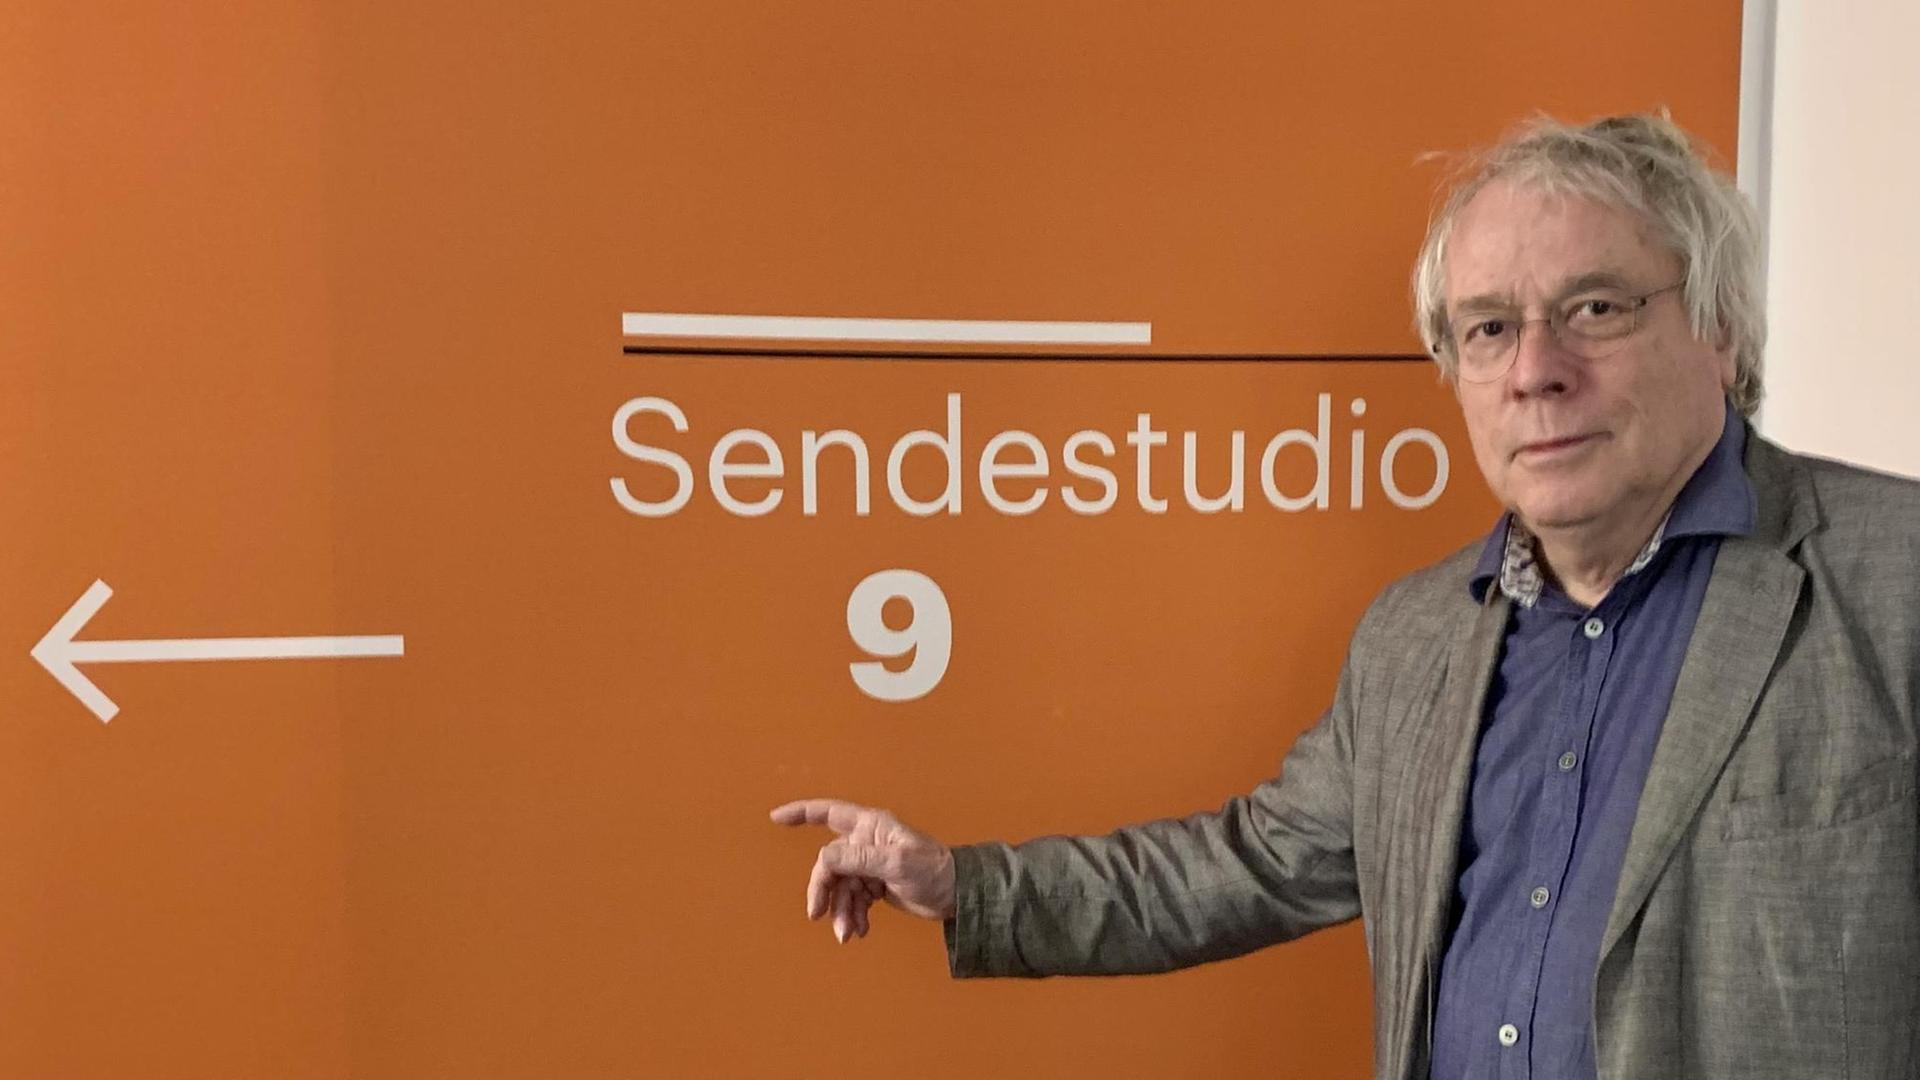 Der Journalist Thomas Nehls deutet im Funkhaus von Deutschlandfunk Kultur in Berlin auf einen Wegweiser "Sendestudio 9" auf einer orangefarbenen Wand.